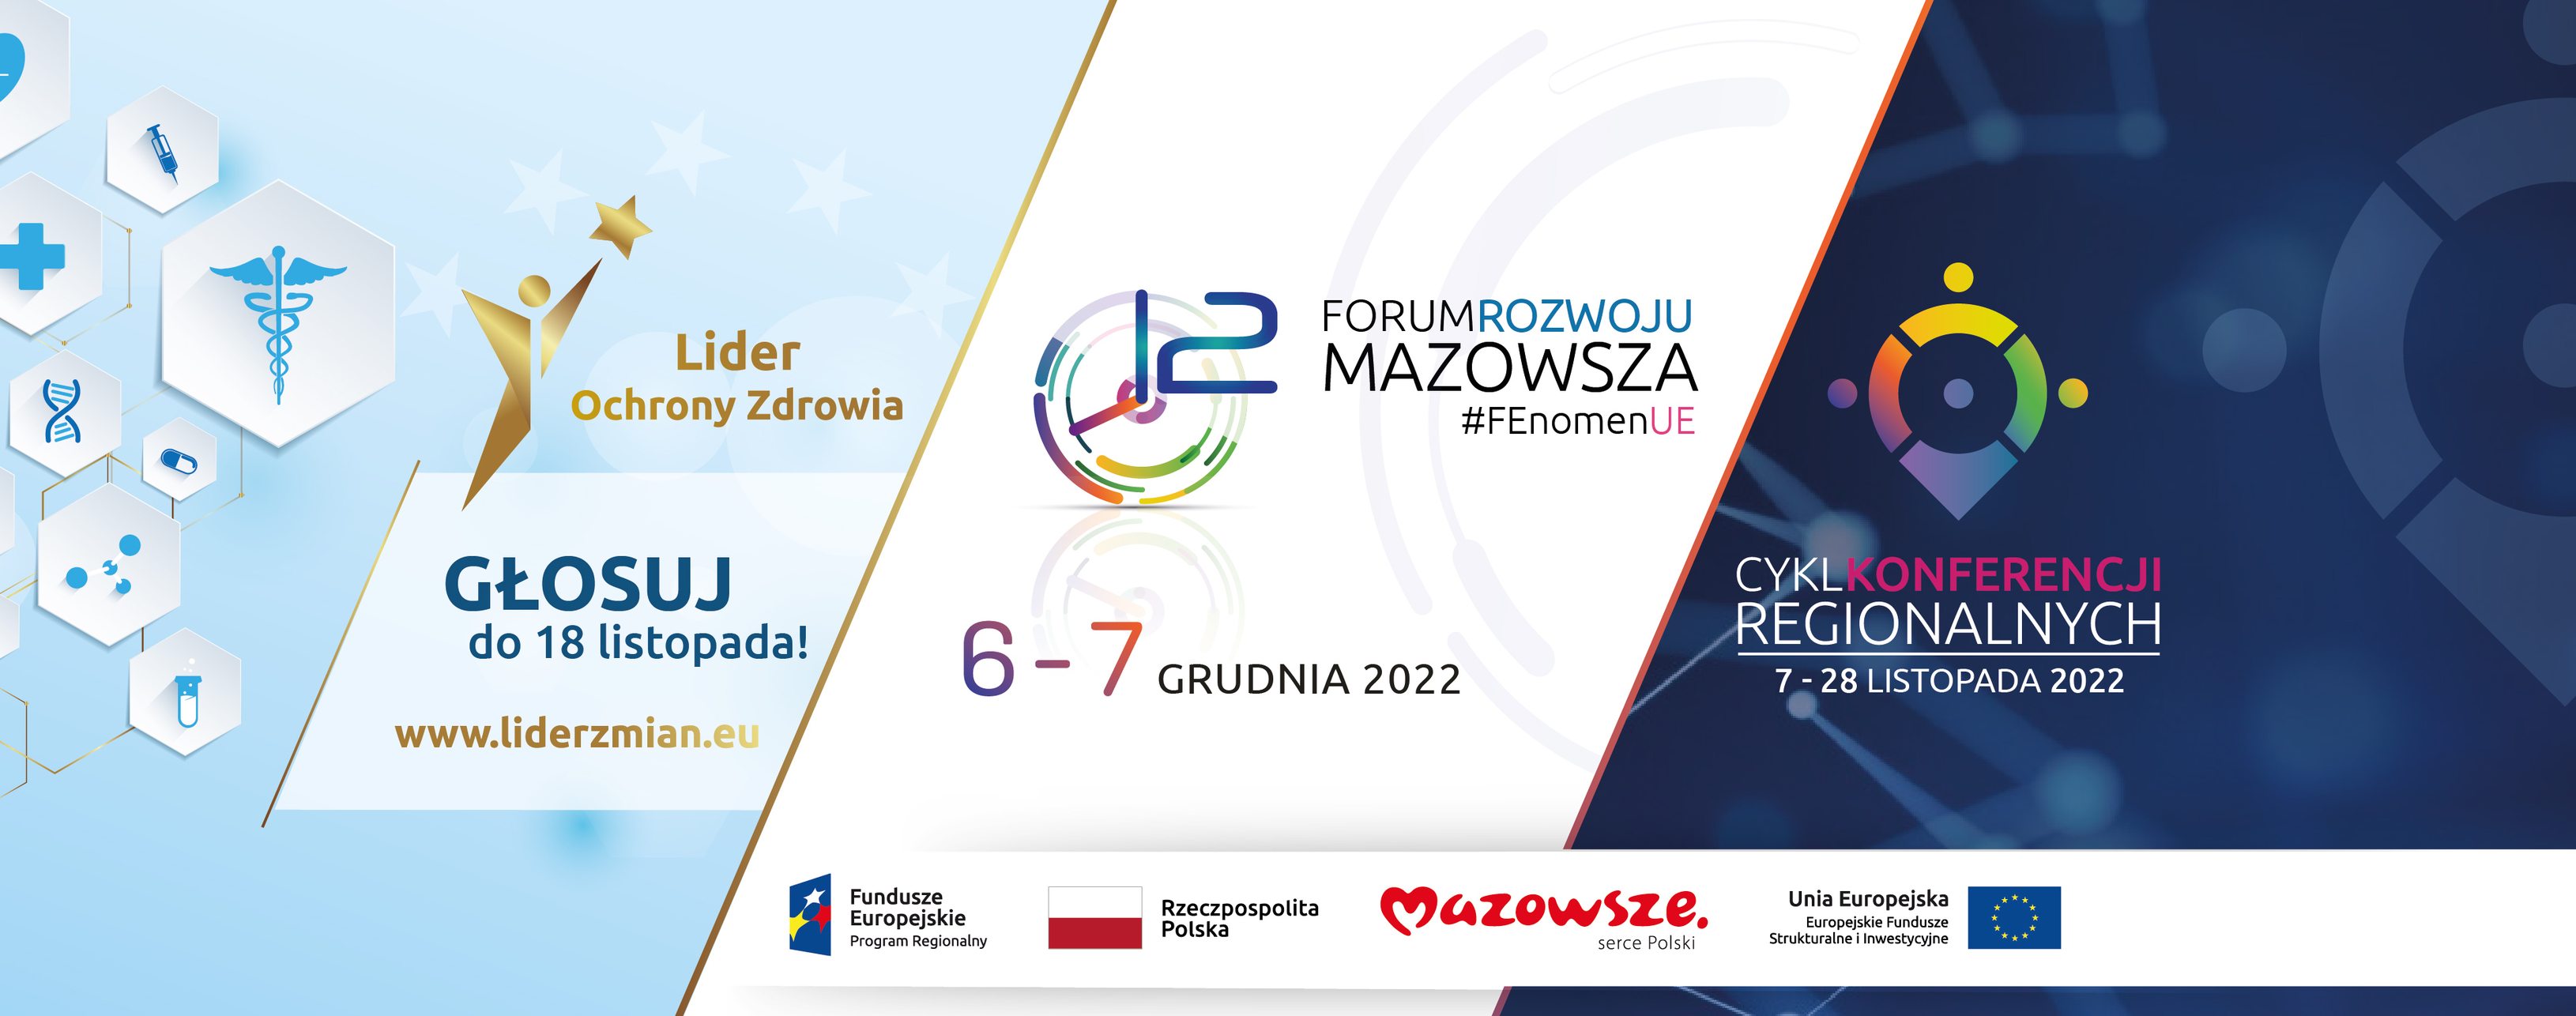 Forum Rozwoju Mazowsza #eFEktUE - ZielonaGospodarka.pl